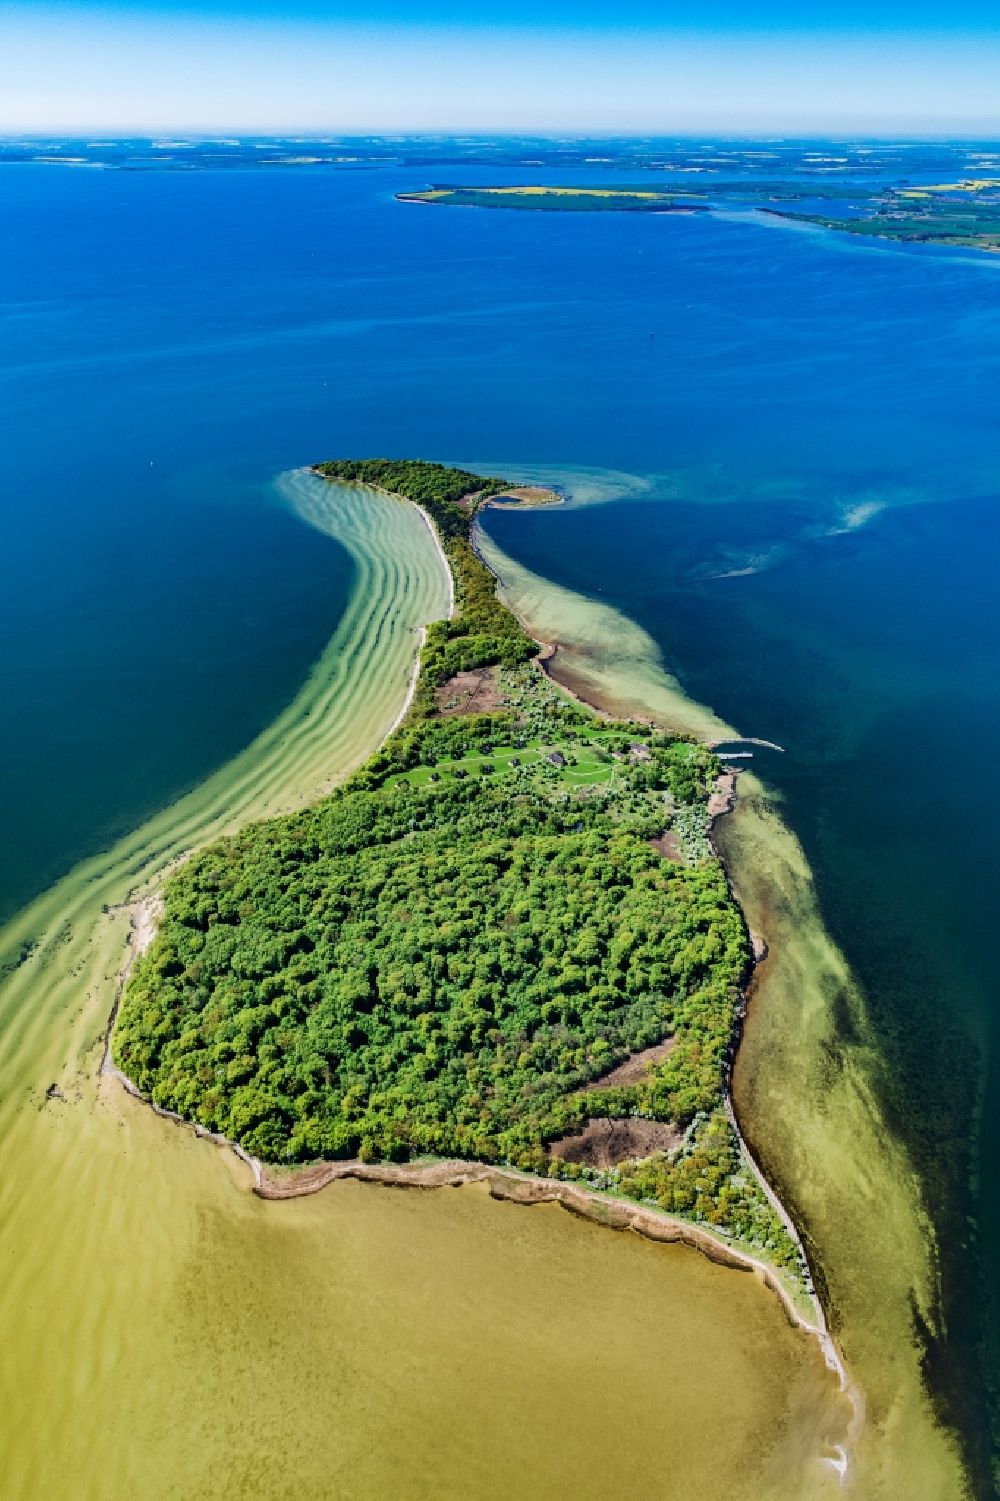 Luftaufnahme Putbus - Küstenbereich der Ostsee - Insel Vilm in Putbus im Bundesland Mecklenburg-Vorpommern, Deutschland